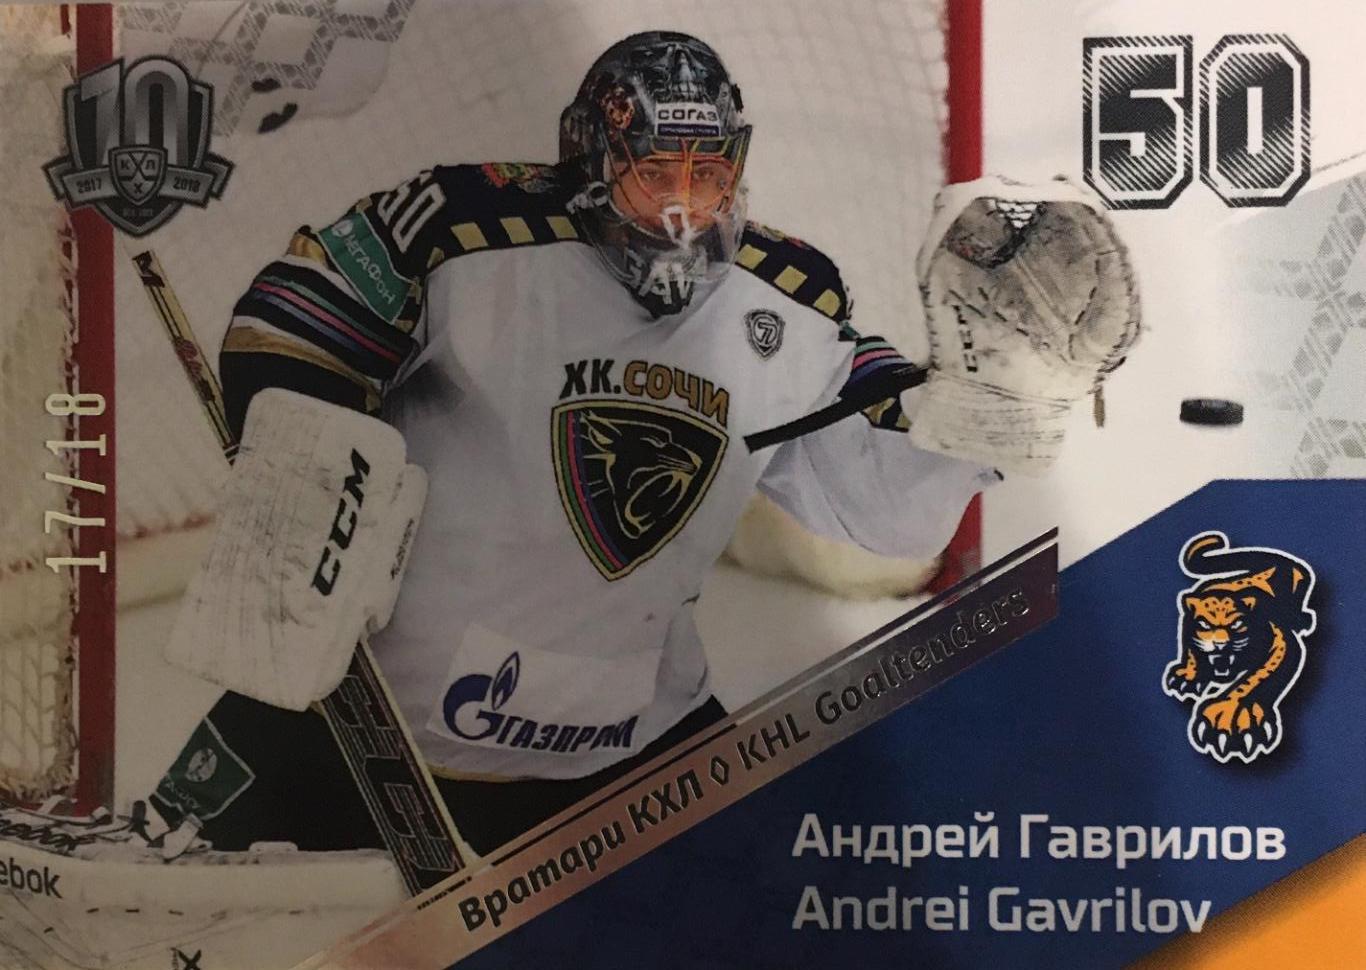 Хоккей. Карточка Андрей Гаврилов ХК Сочи КХЛ/KHL сезон 2008-2018 SeReal